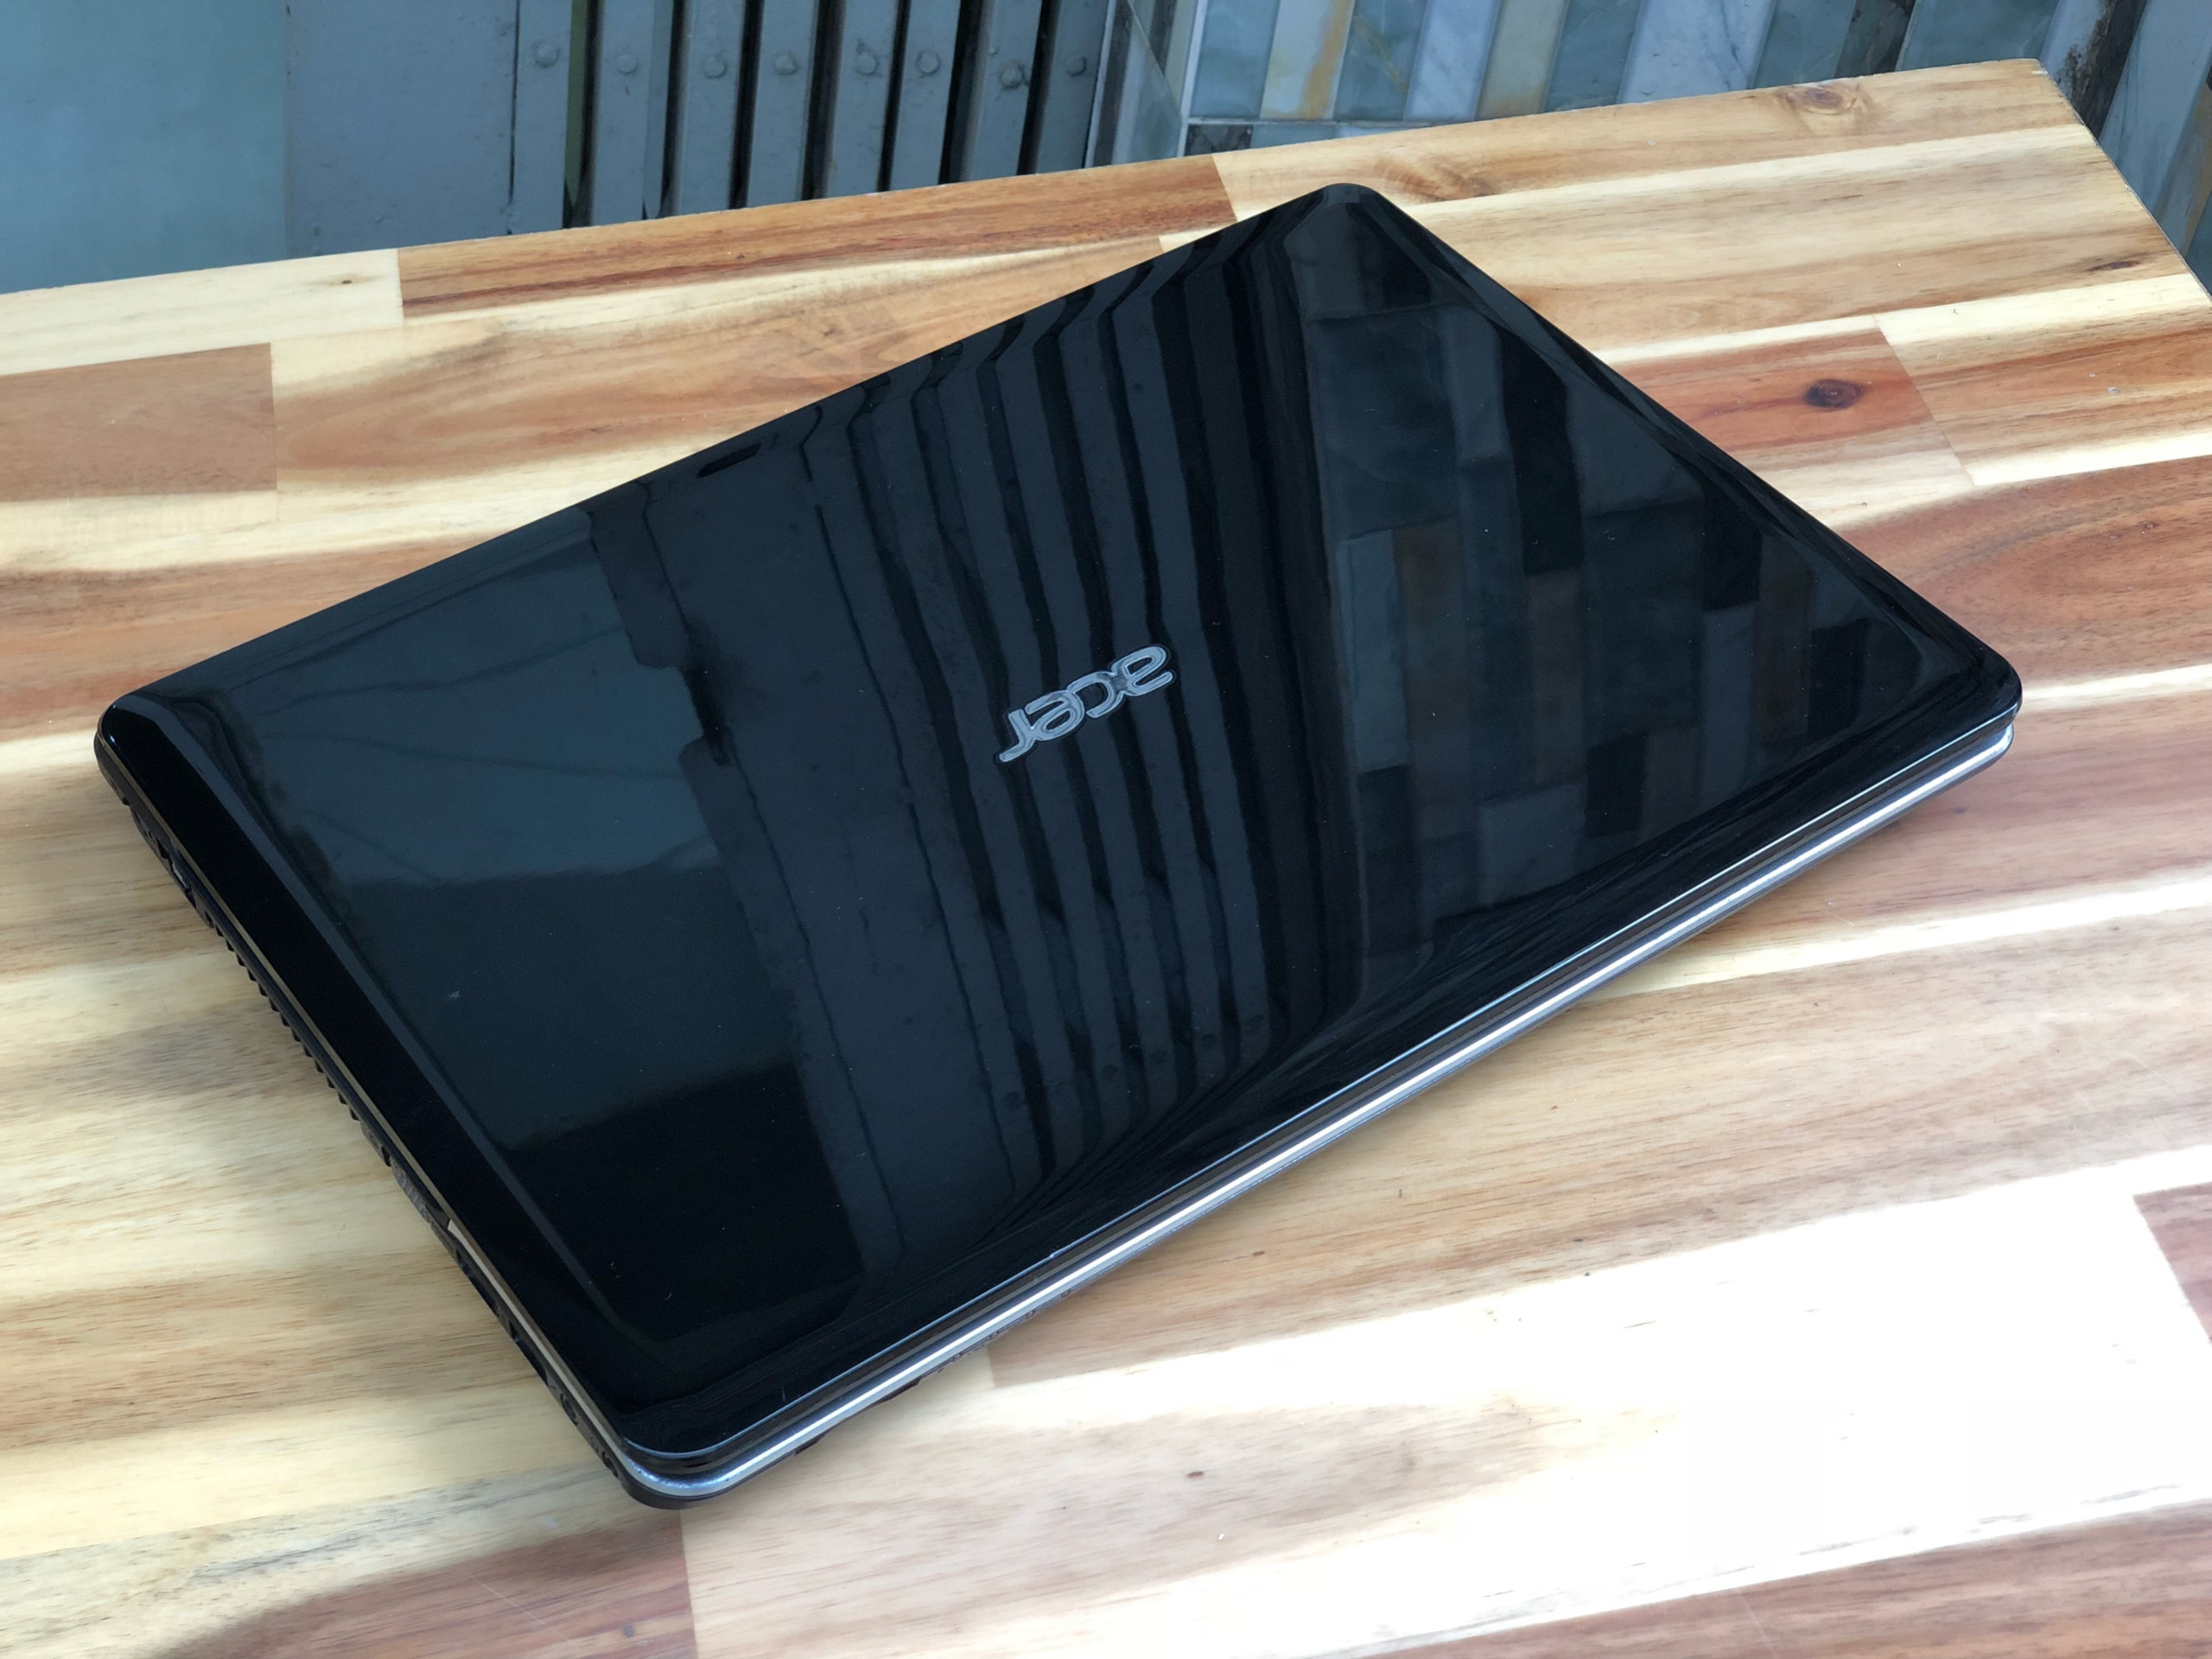 Laptop Acer Aspire E1-431, i3 3110M 4G 500G Đẹp zin 100% Giá rẻ4